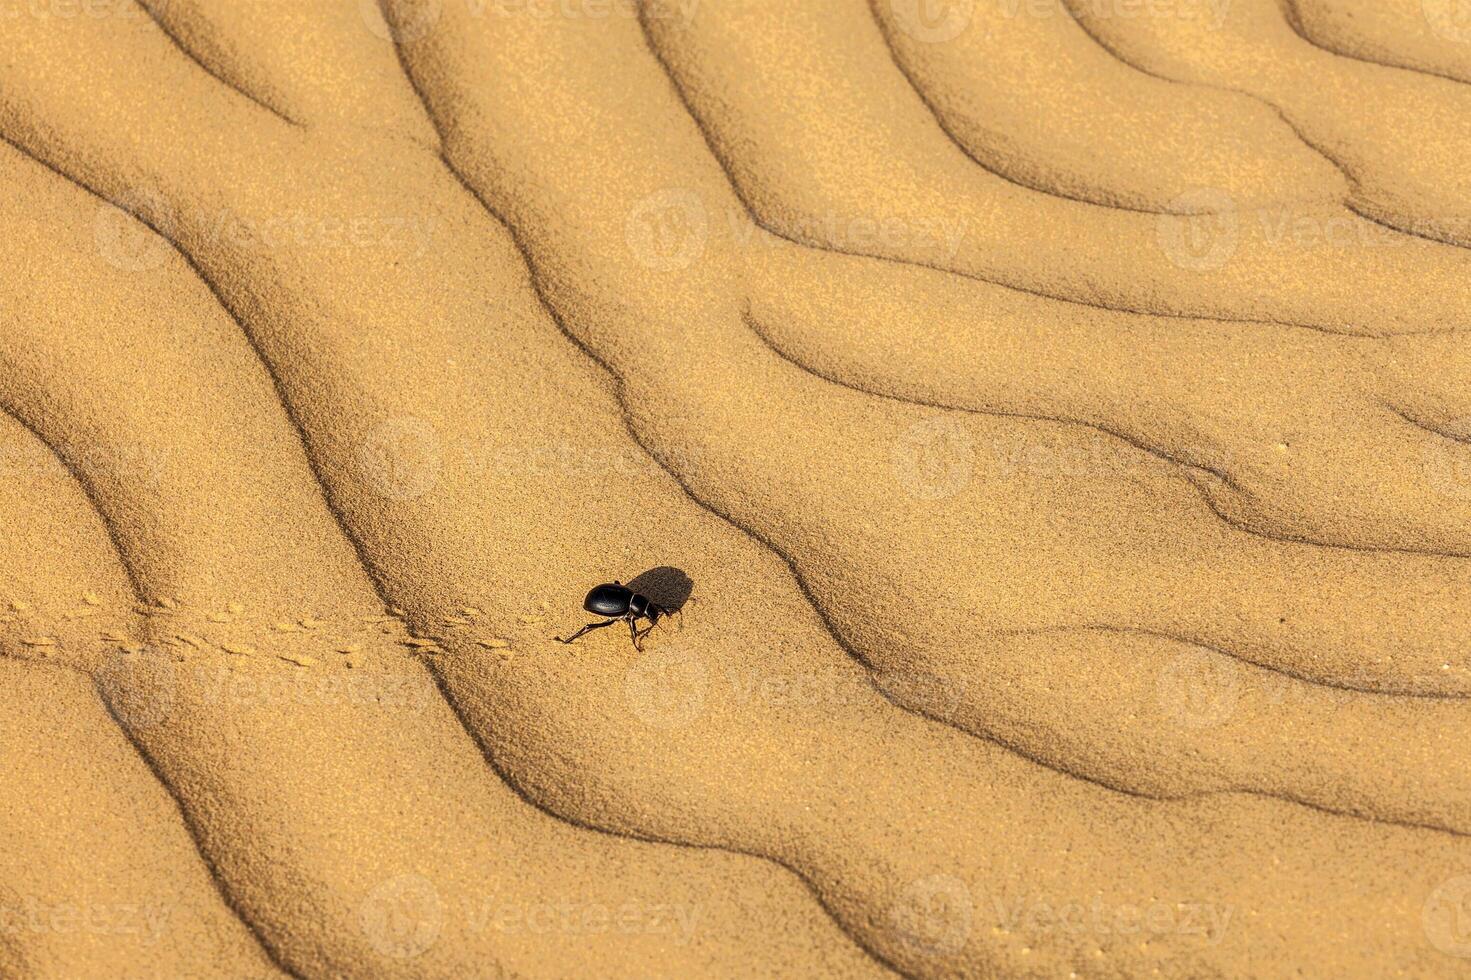 Skarabäus Scarabäus Käfer auf Wüste Sand foto